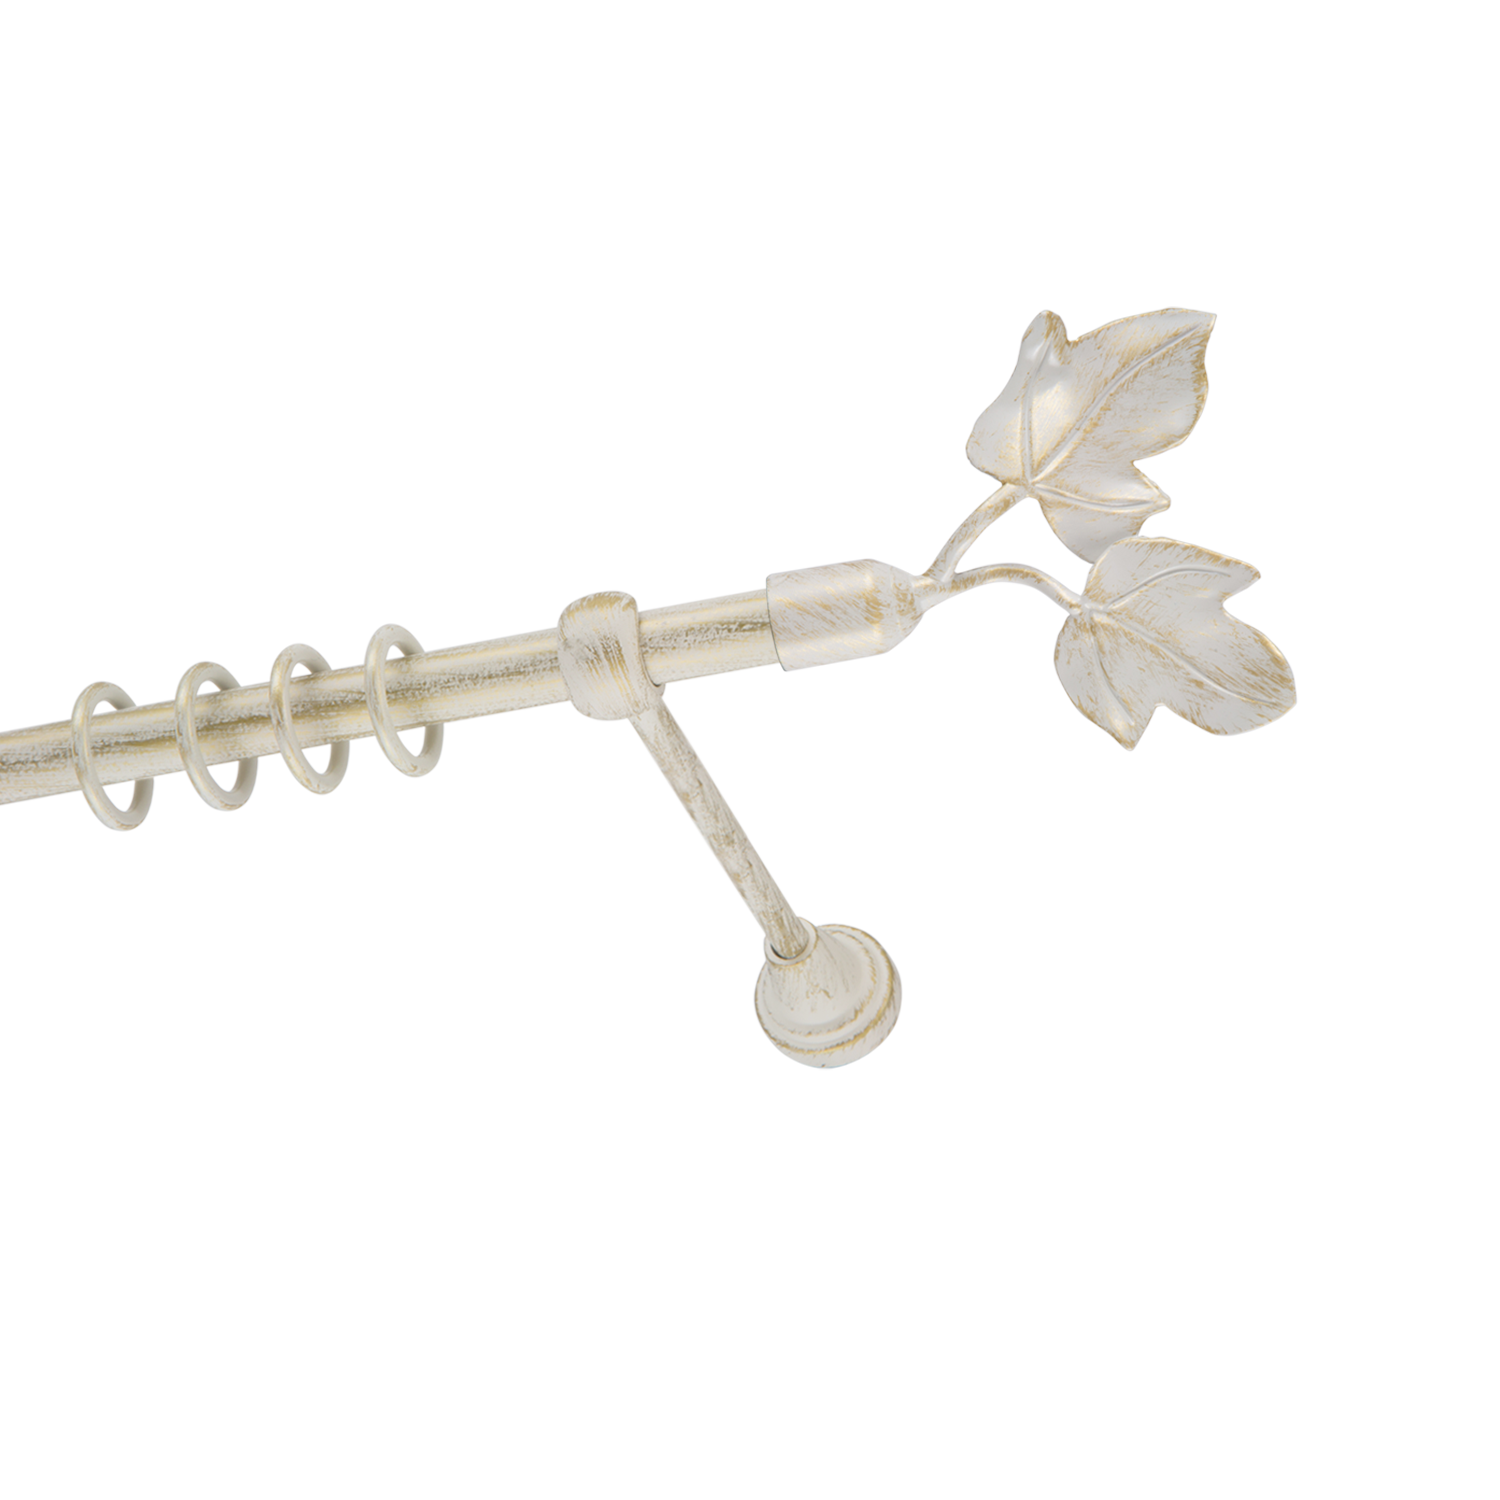 Металлический карниз для штор Листья, однорядный 16 мм, белый, гладкая штанга, длина 180 см - фото Wikidecor.ru